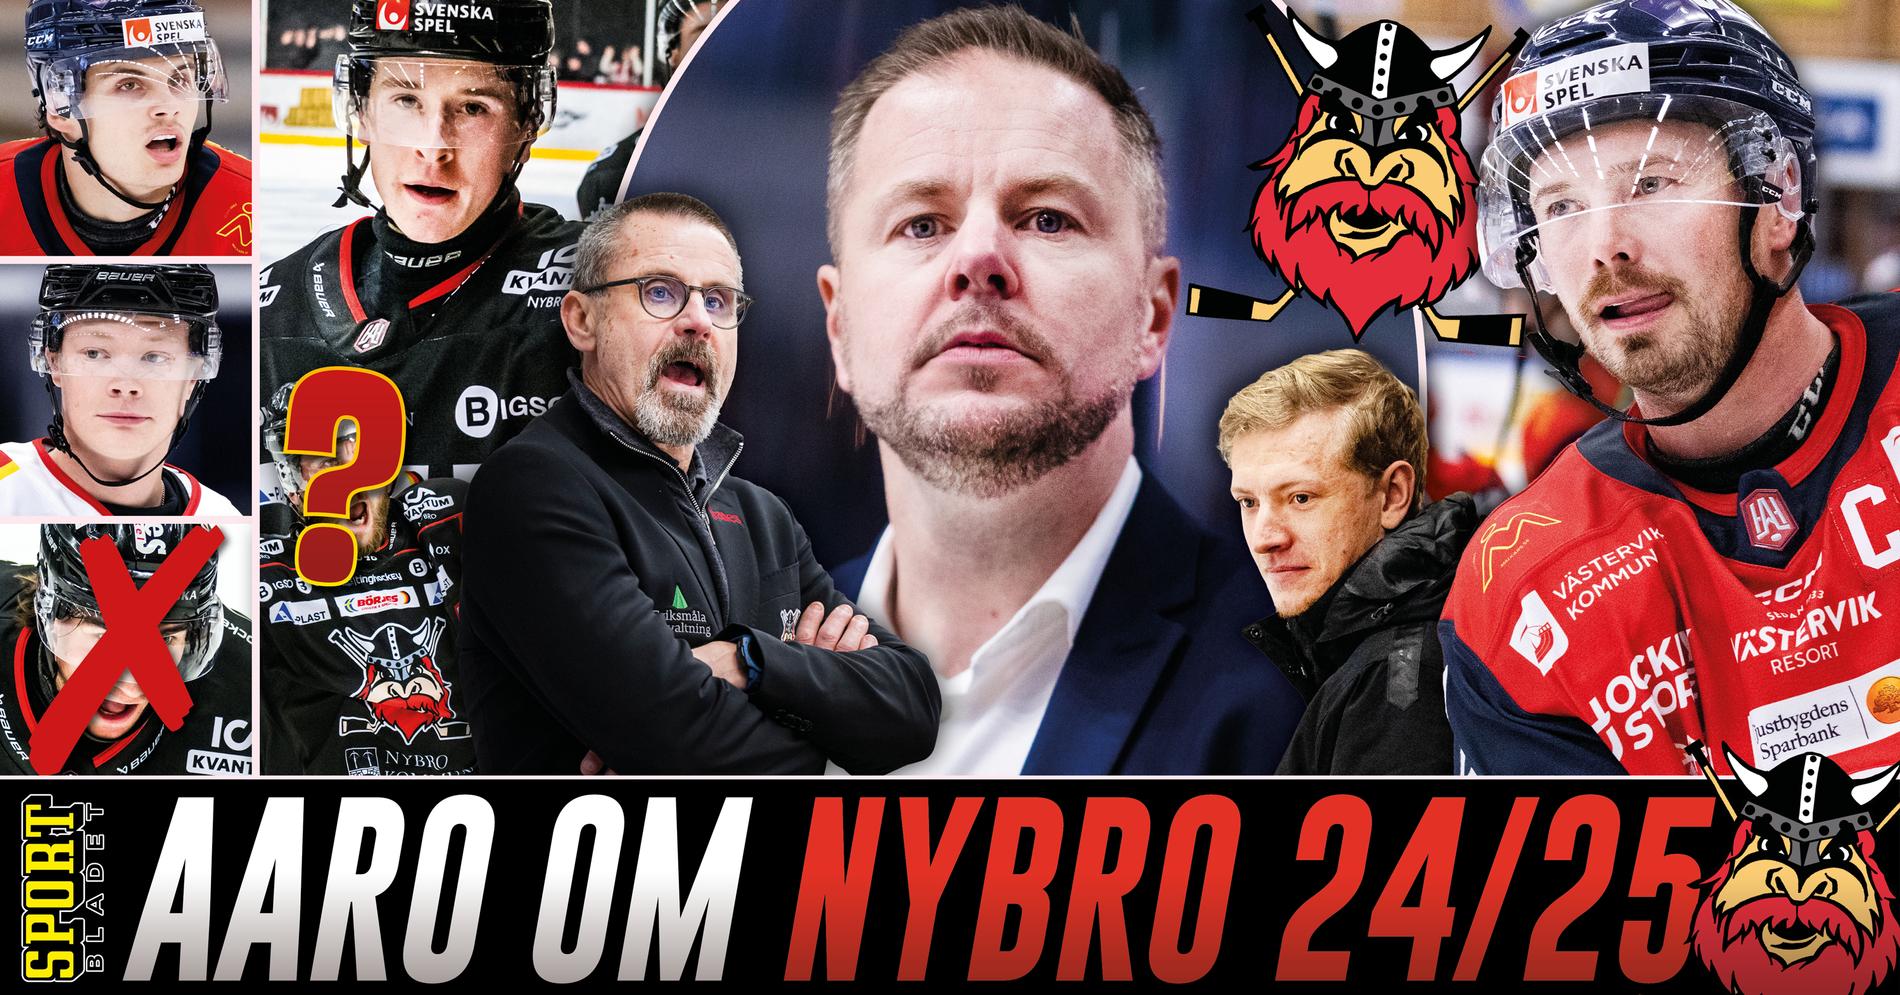 Mikael Aaros värvningslöfte i Nybro Vikings: ”Kan göra skillnad”